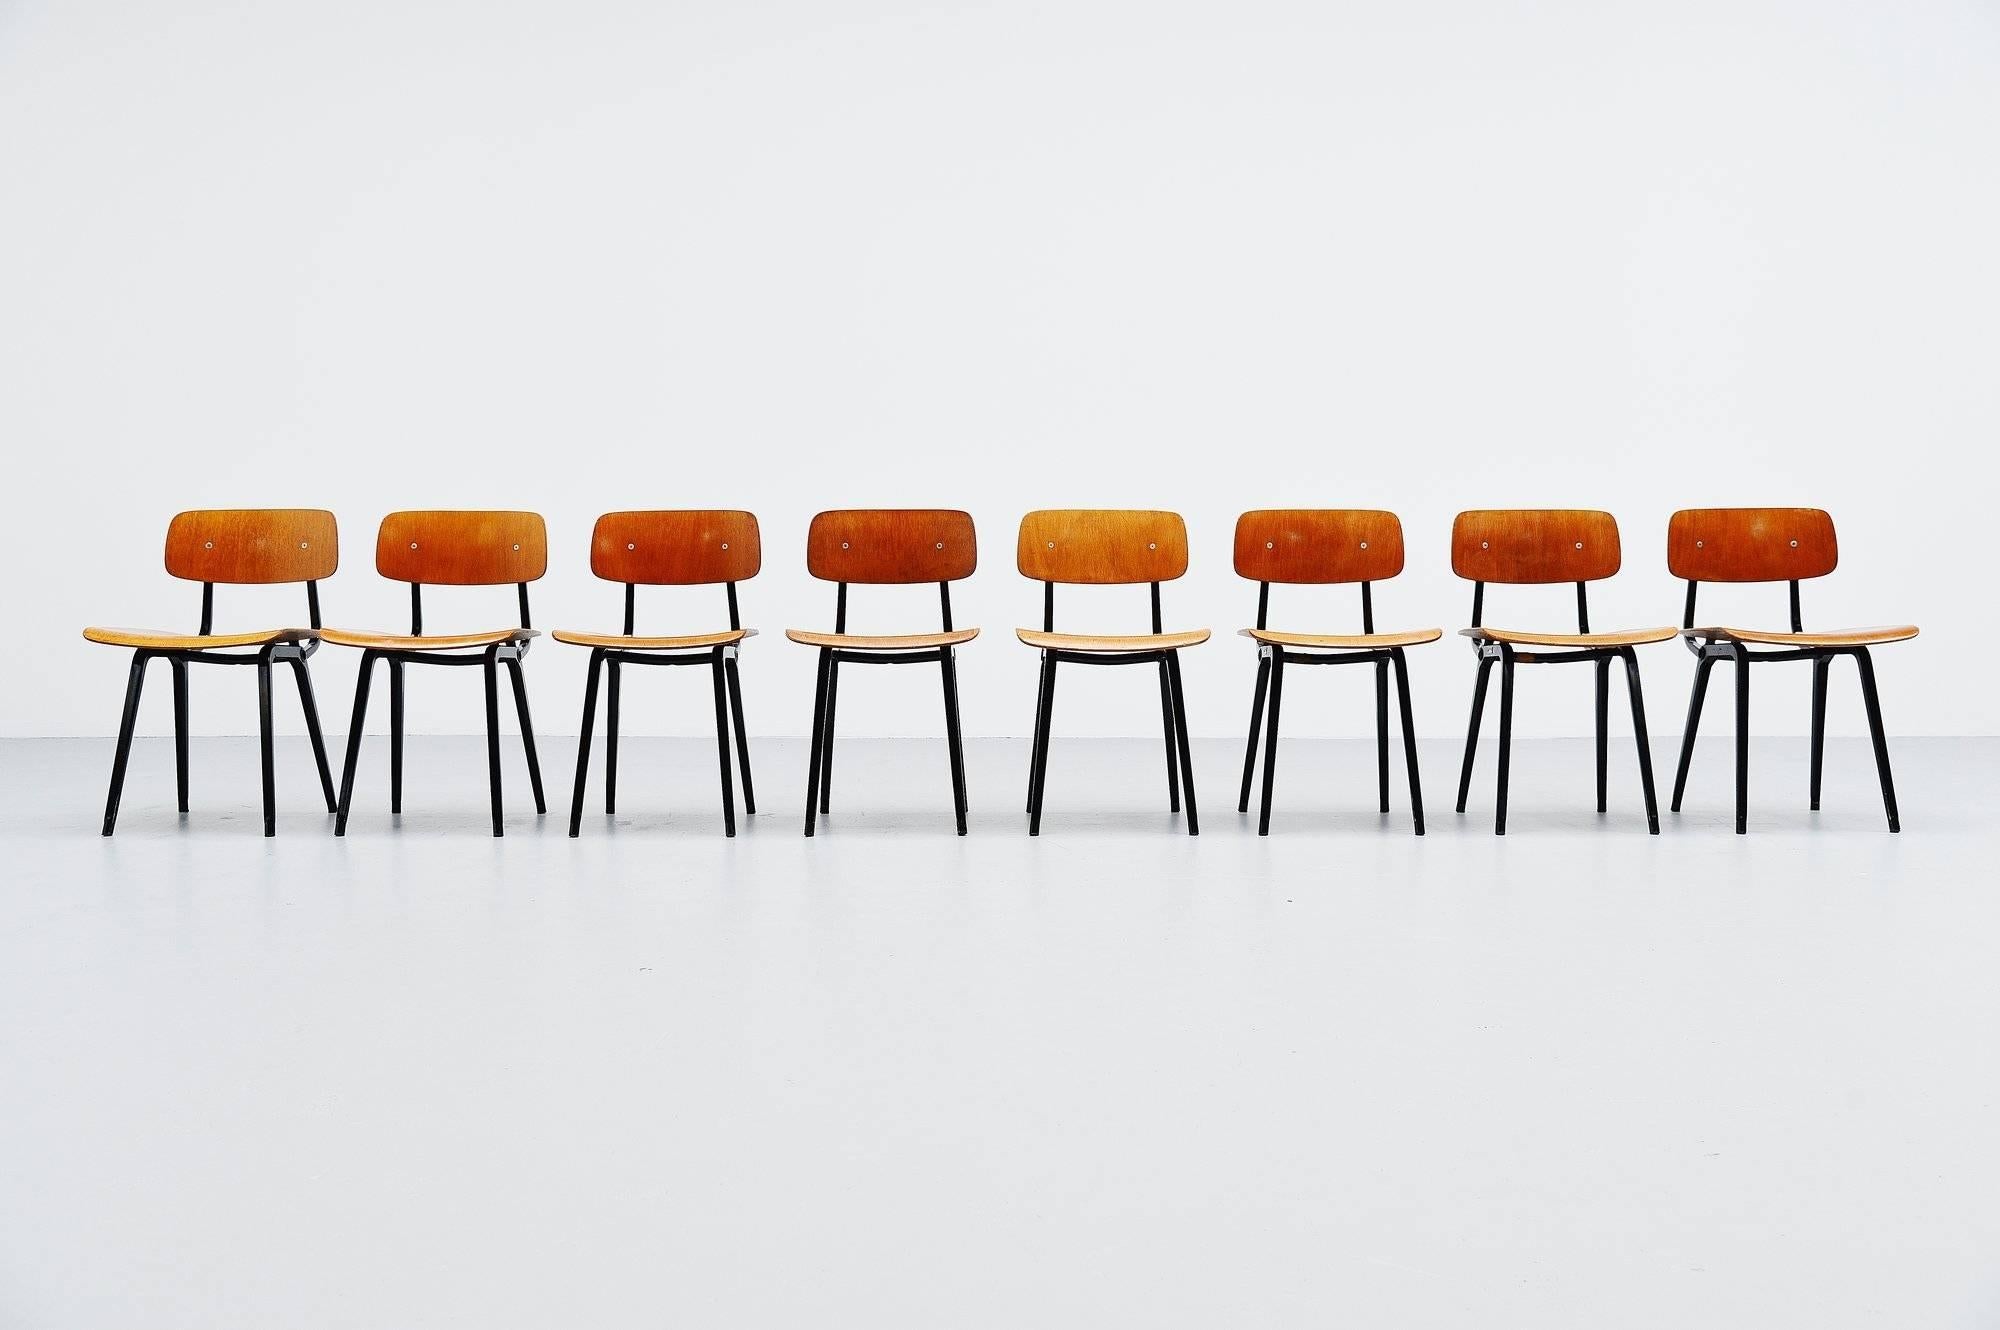 Sehr schöner Satz von acht Revolte-Esszimmerstühlen, entworfen von Friso Kramer für Ahrend de Cirkel, Holland, 1953. Obwohl der Revolt-Stuhl bereits 1953 entworfen wurde, begann die Produktion erst 1958. Diese Stühle sind selten, da sie nur in